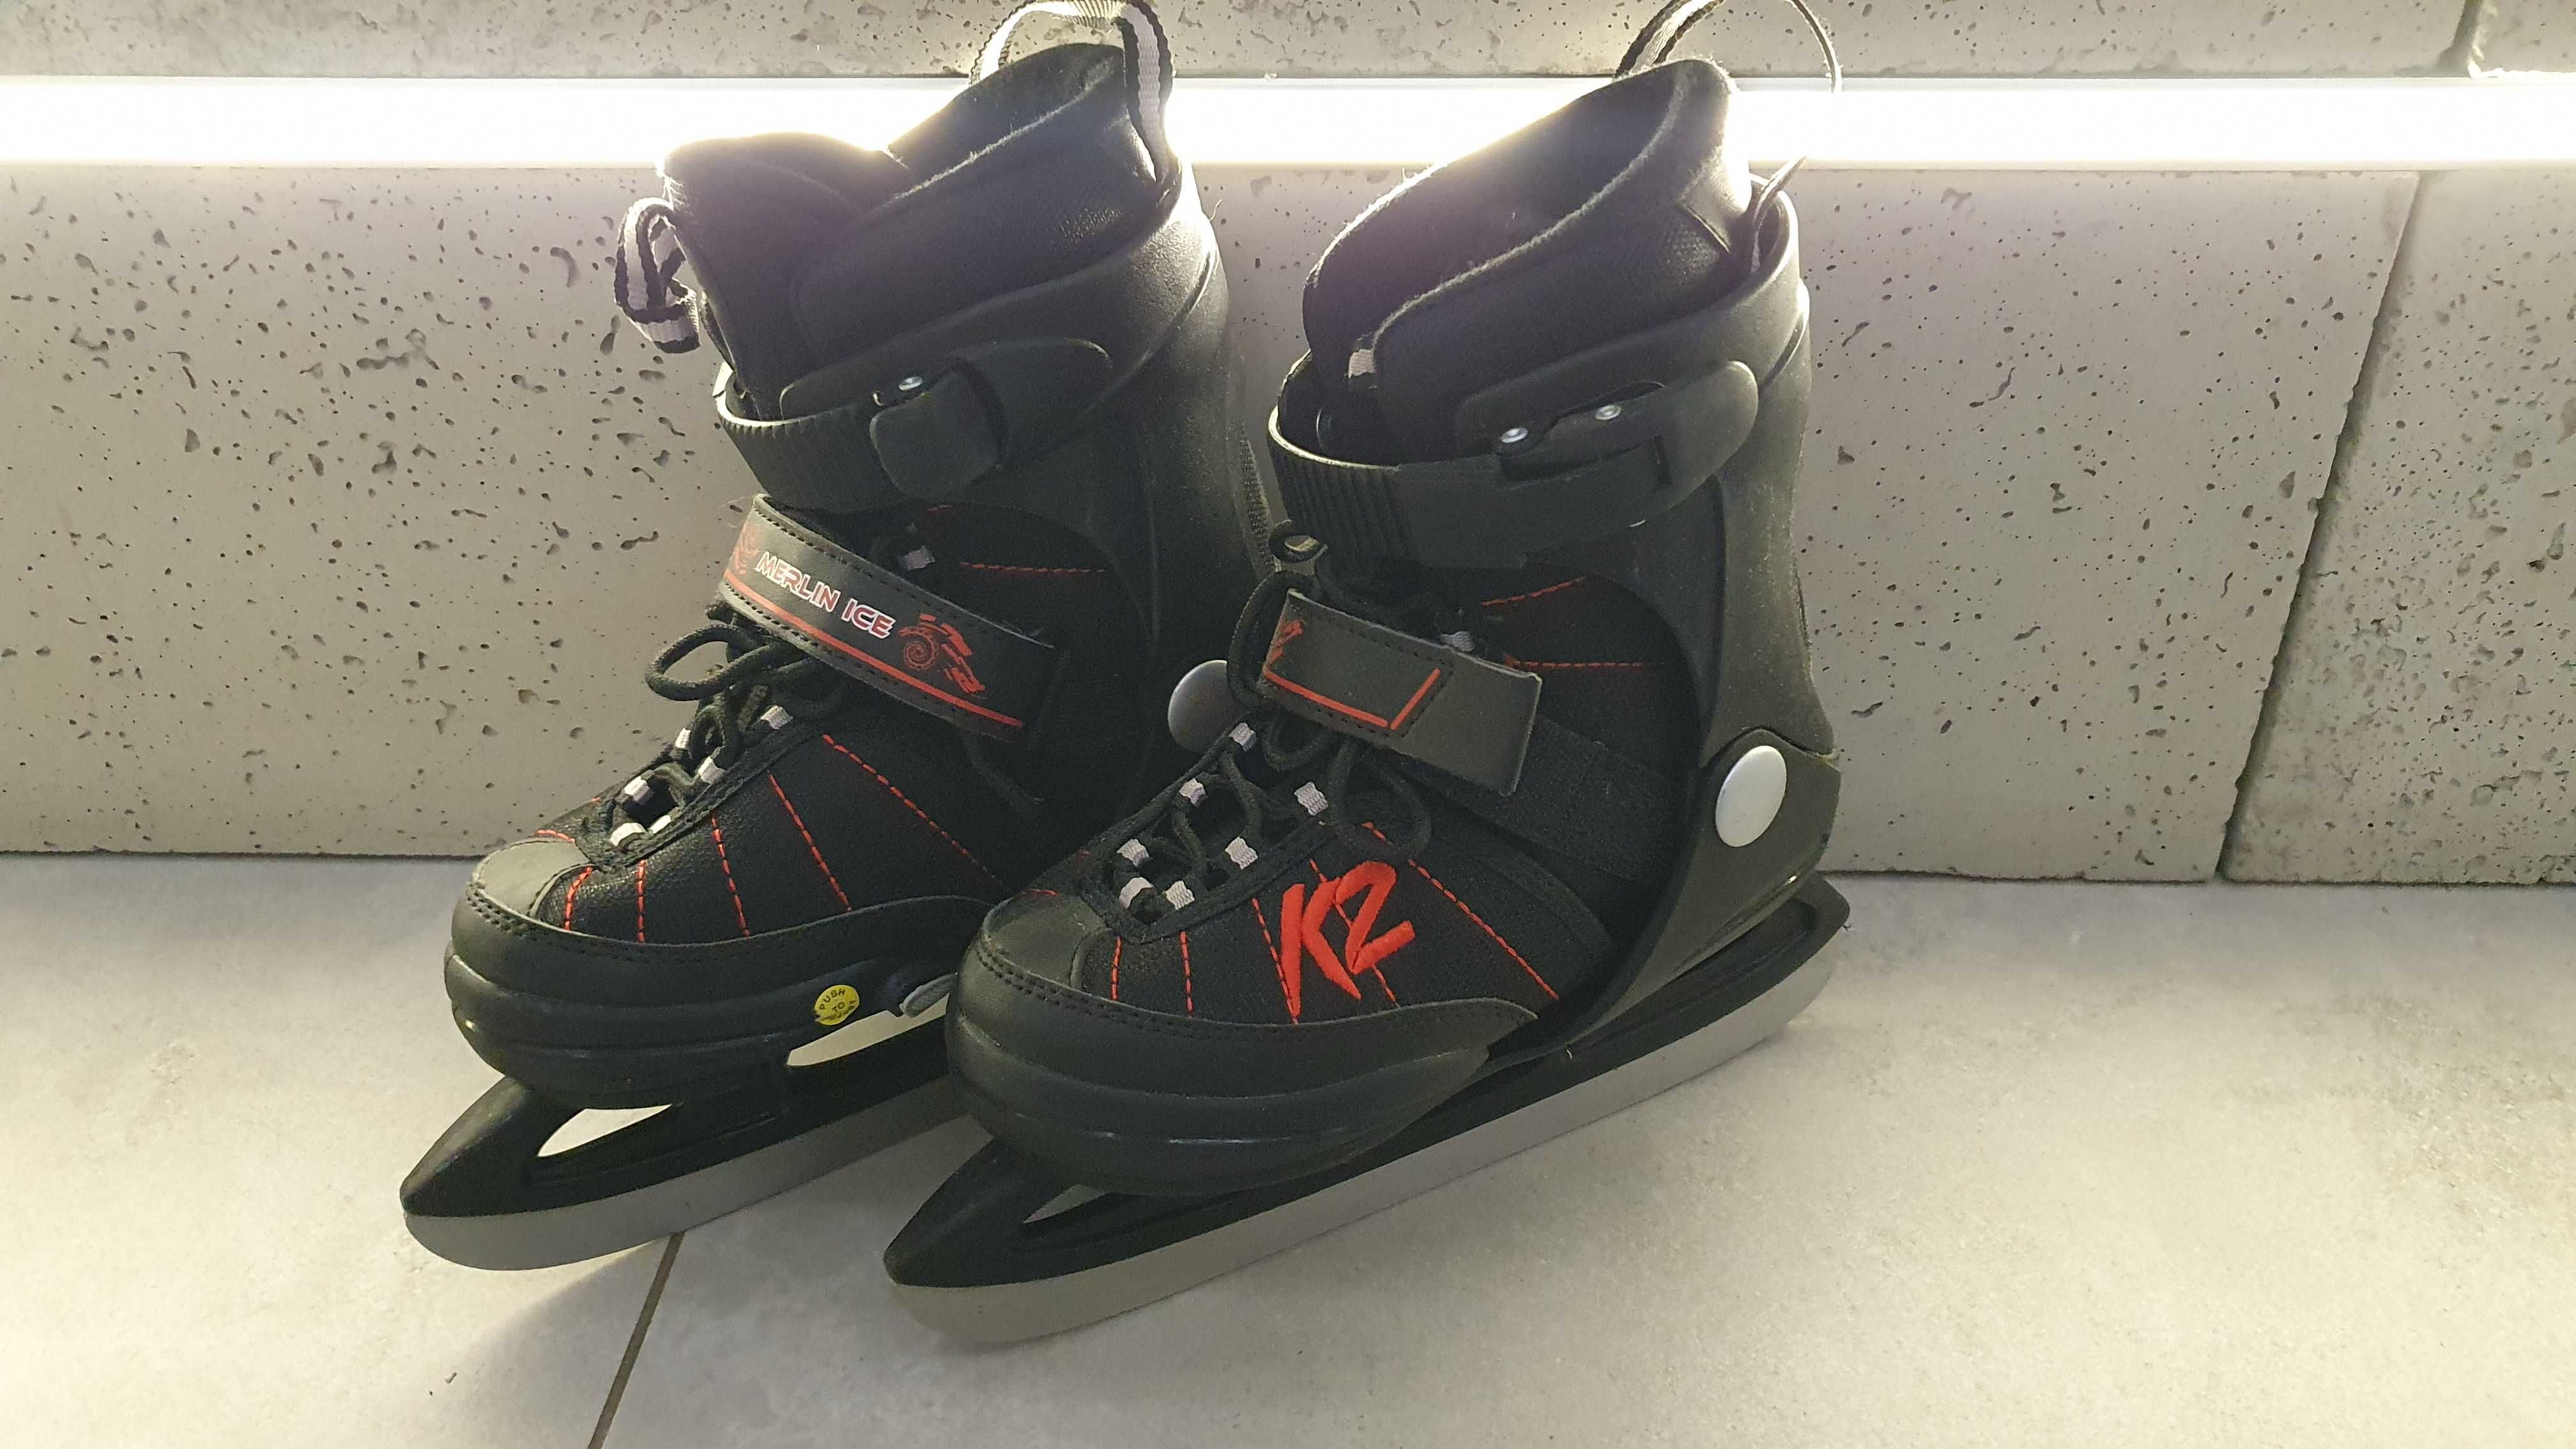 Wielofunkcyjne łyżwy regulowane dla dzieci  K2 Merlin Ice 29-34